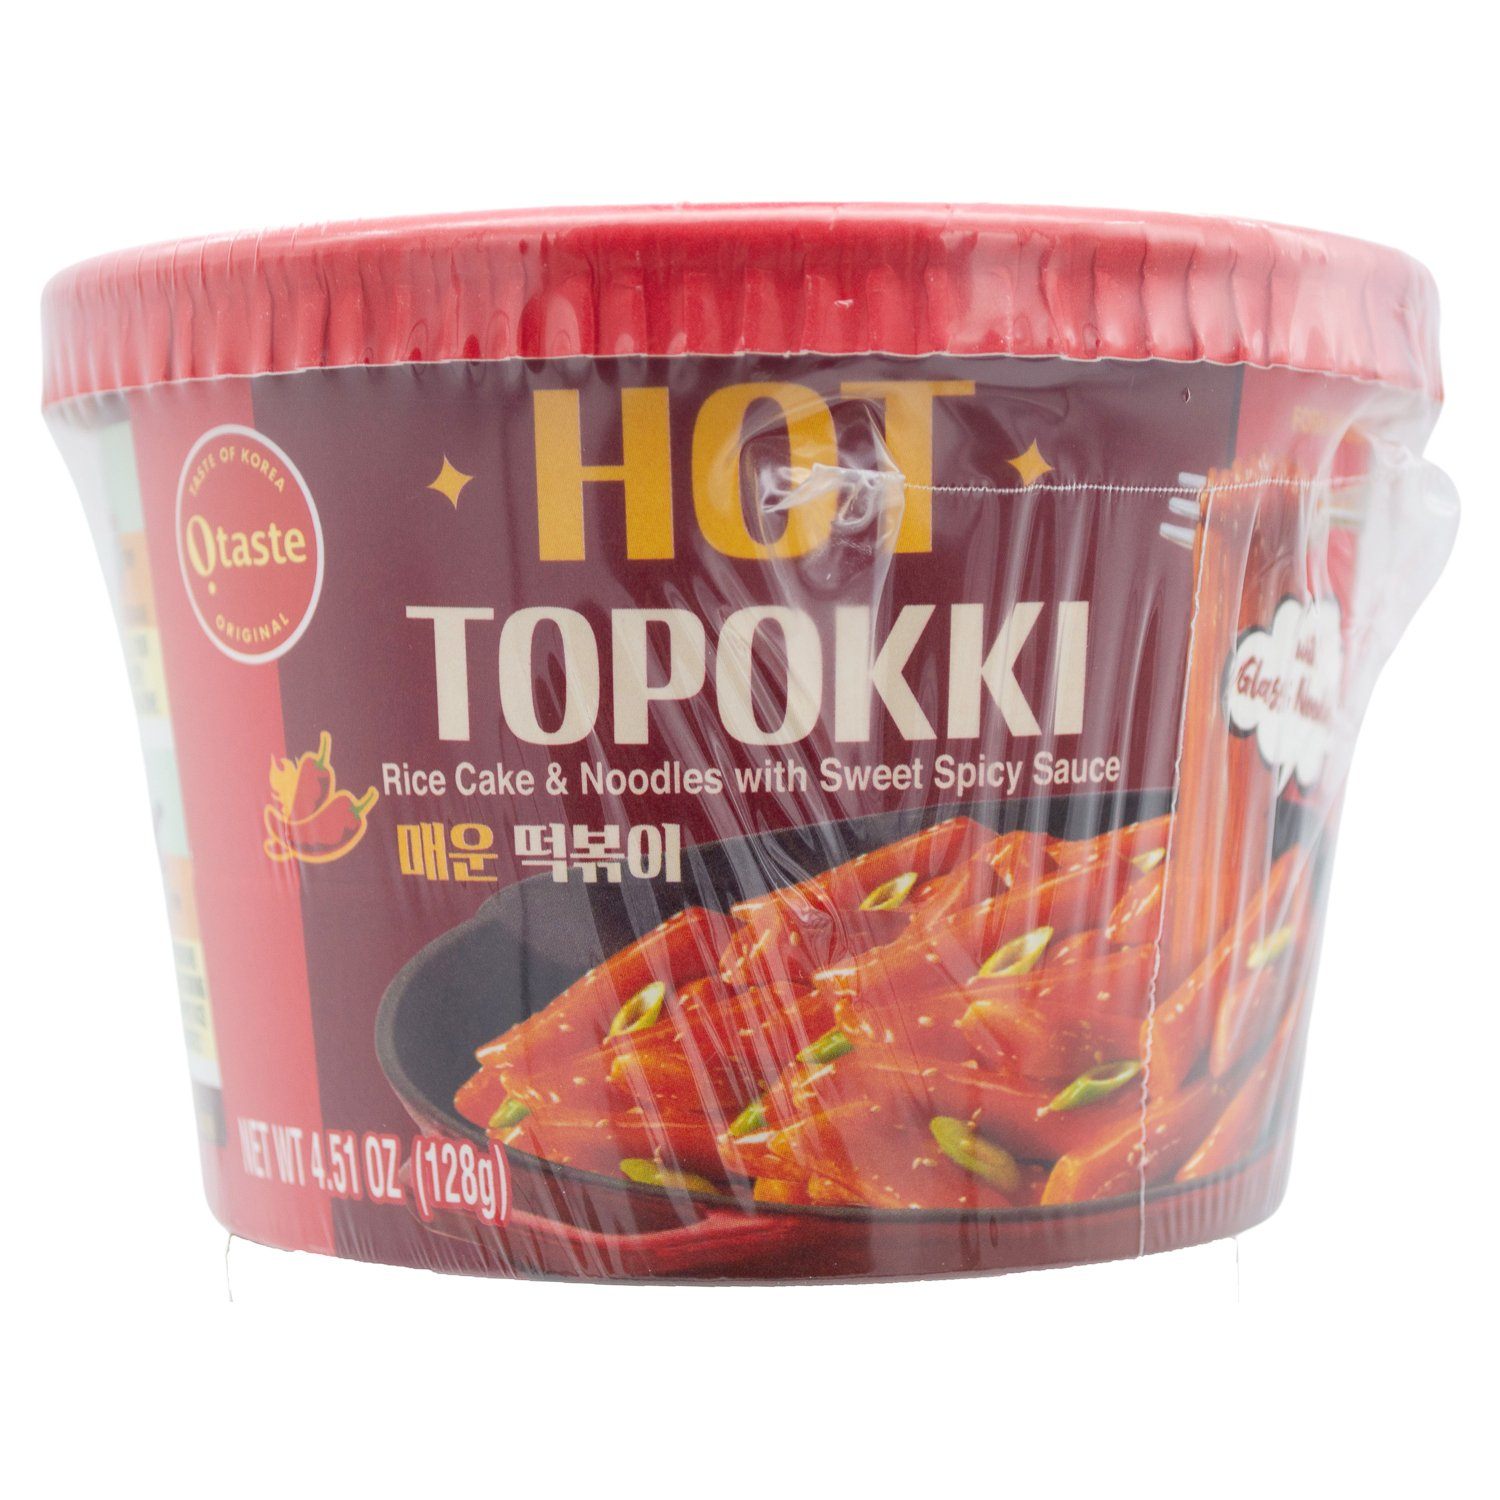 Crazy Hot Topokki Sauce